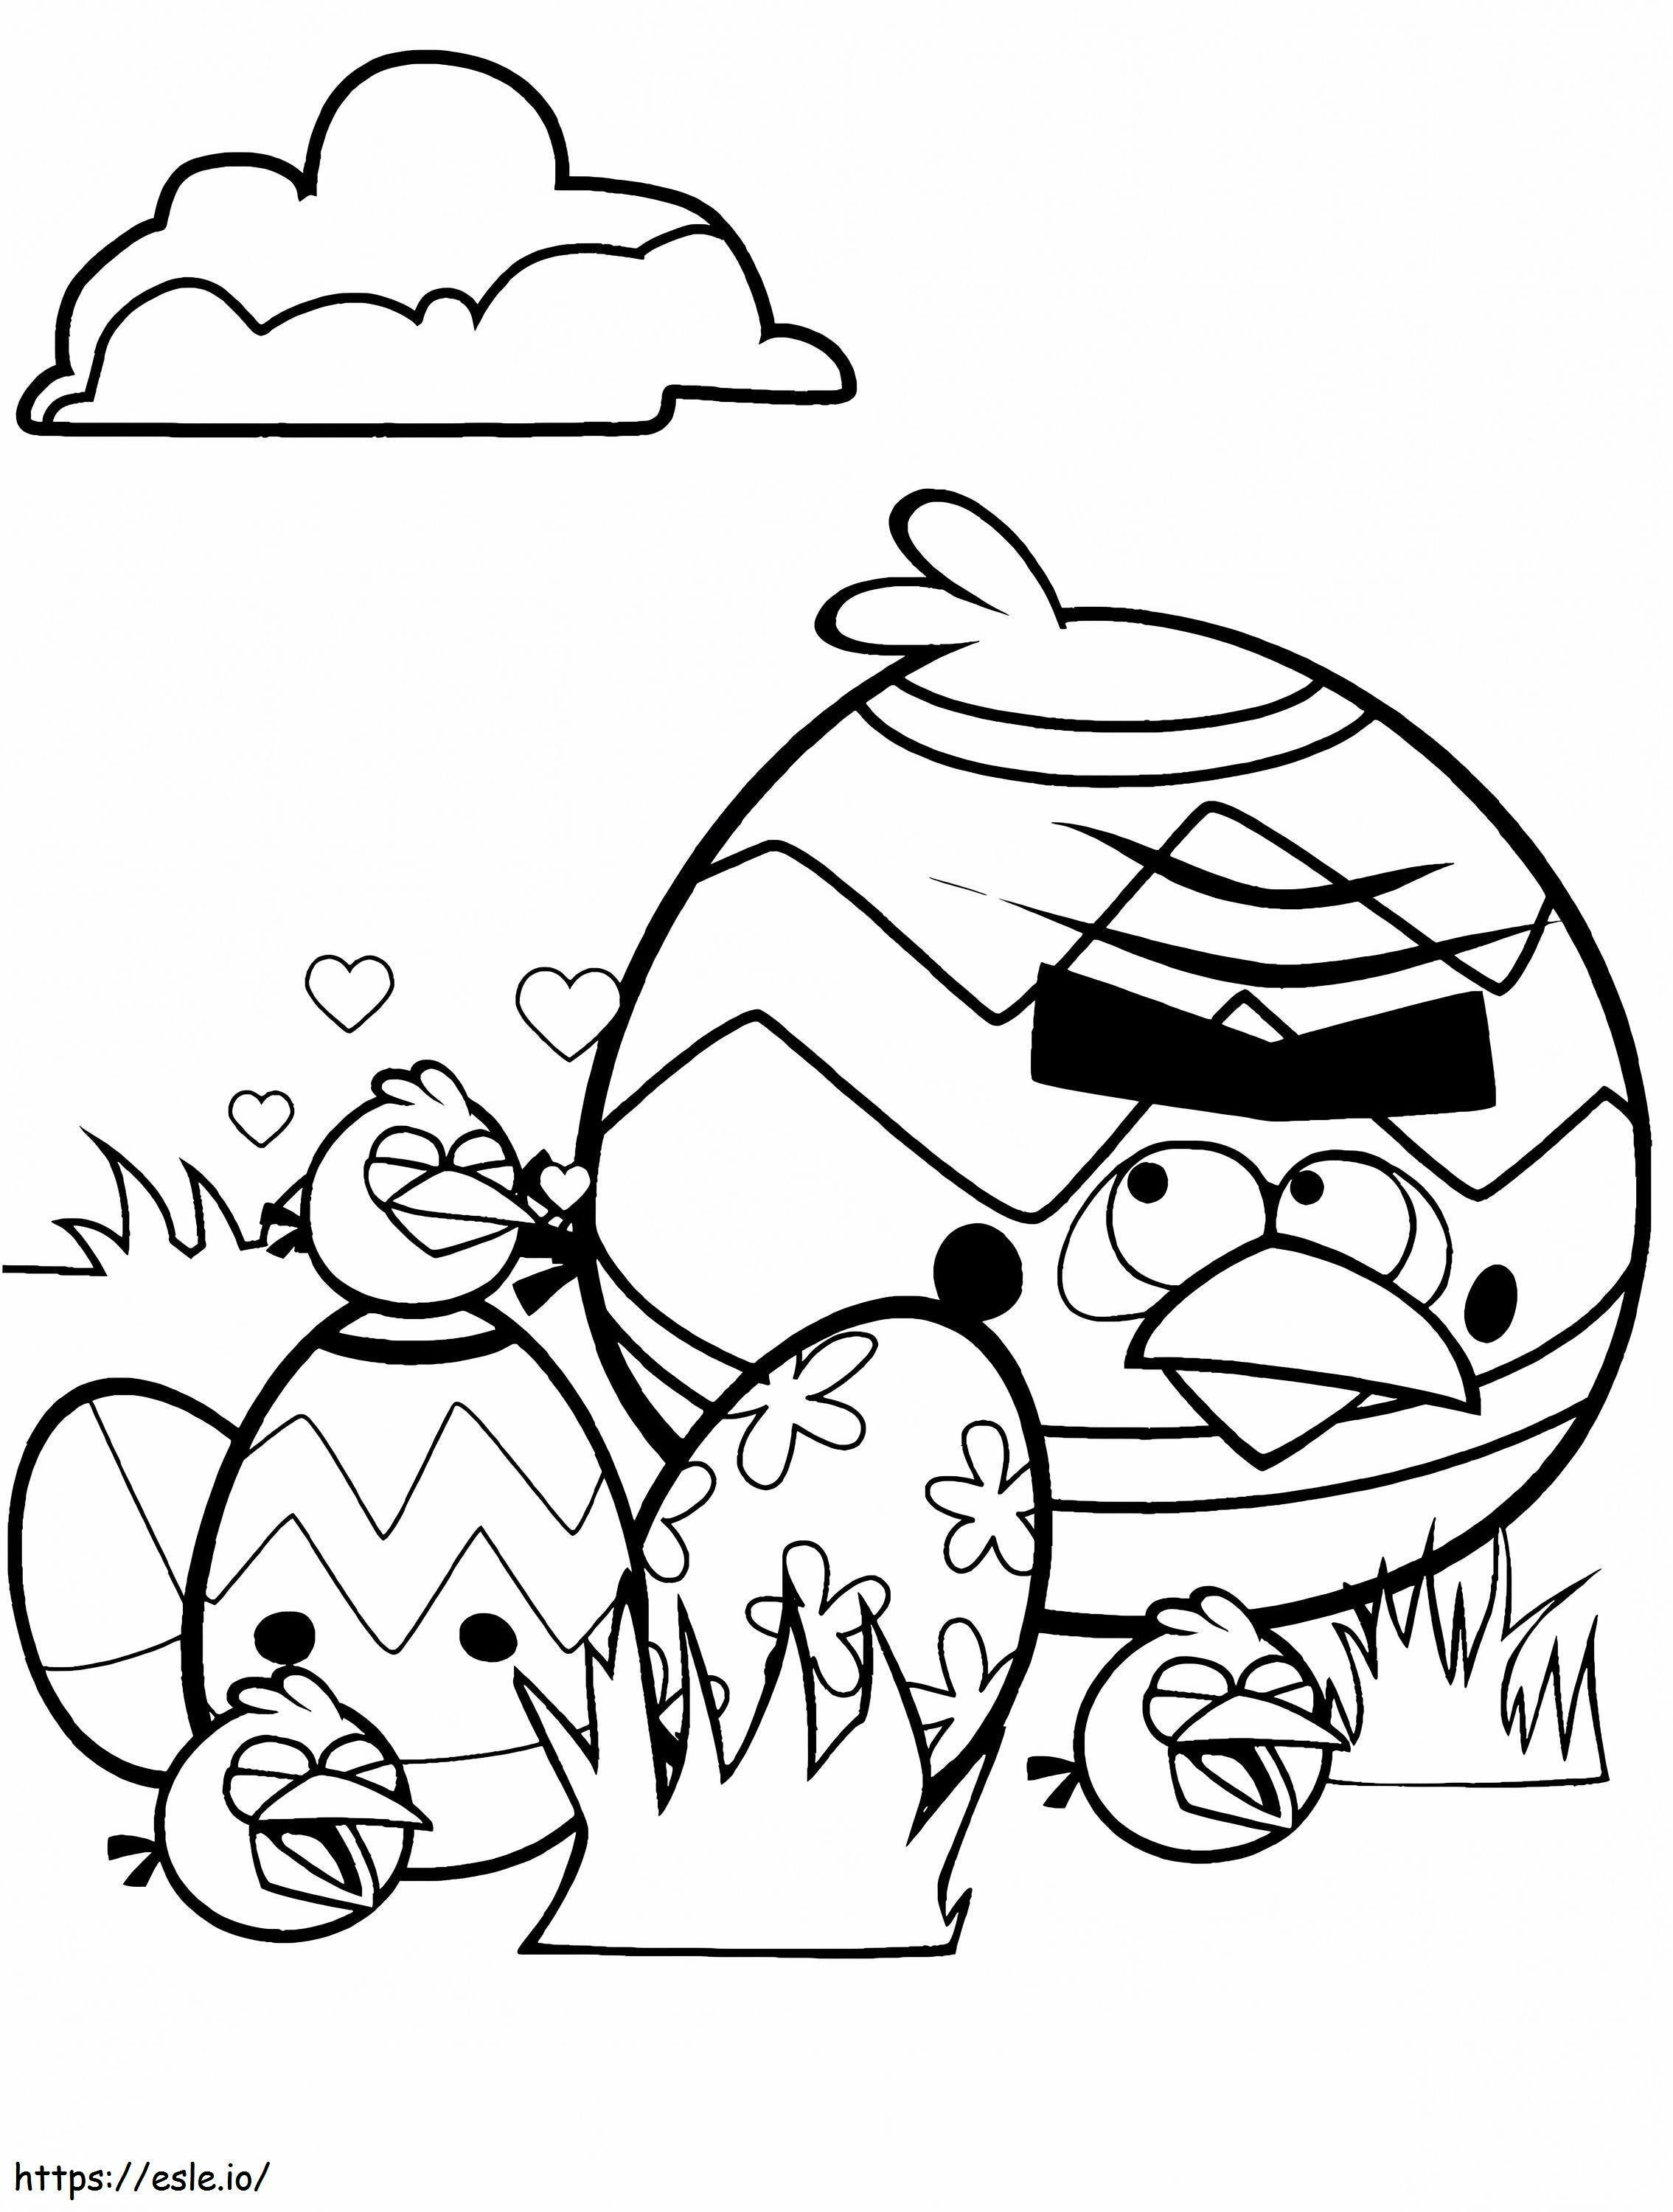 1551685172 Angry Birds 3 boyama